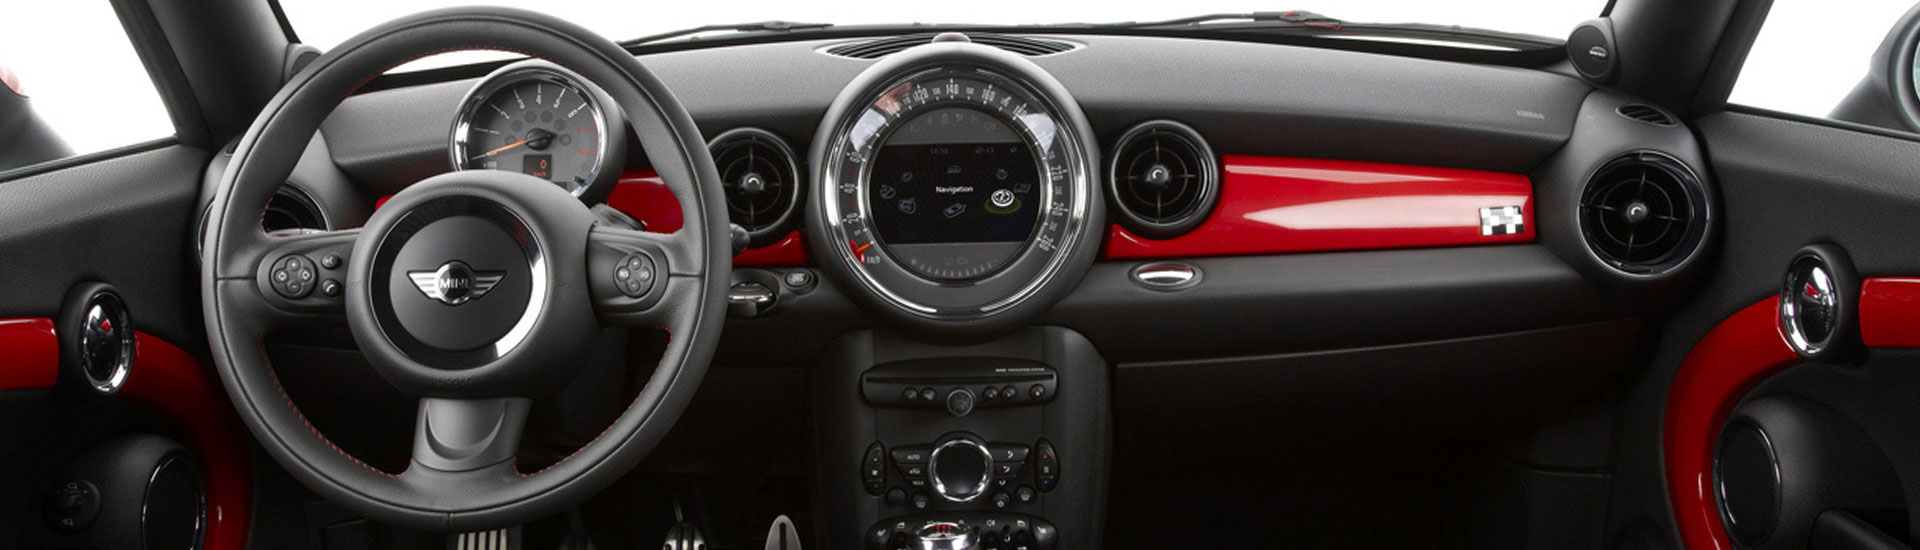 2022 MINI Cooper Dash Kits  Custom 2022 MINI Cooper Dash Kit